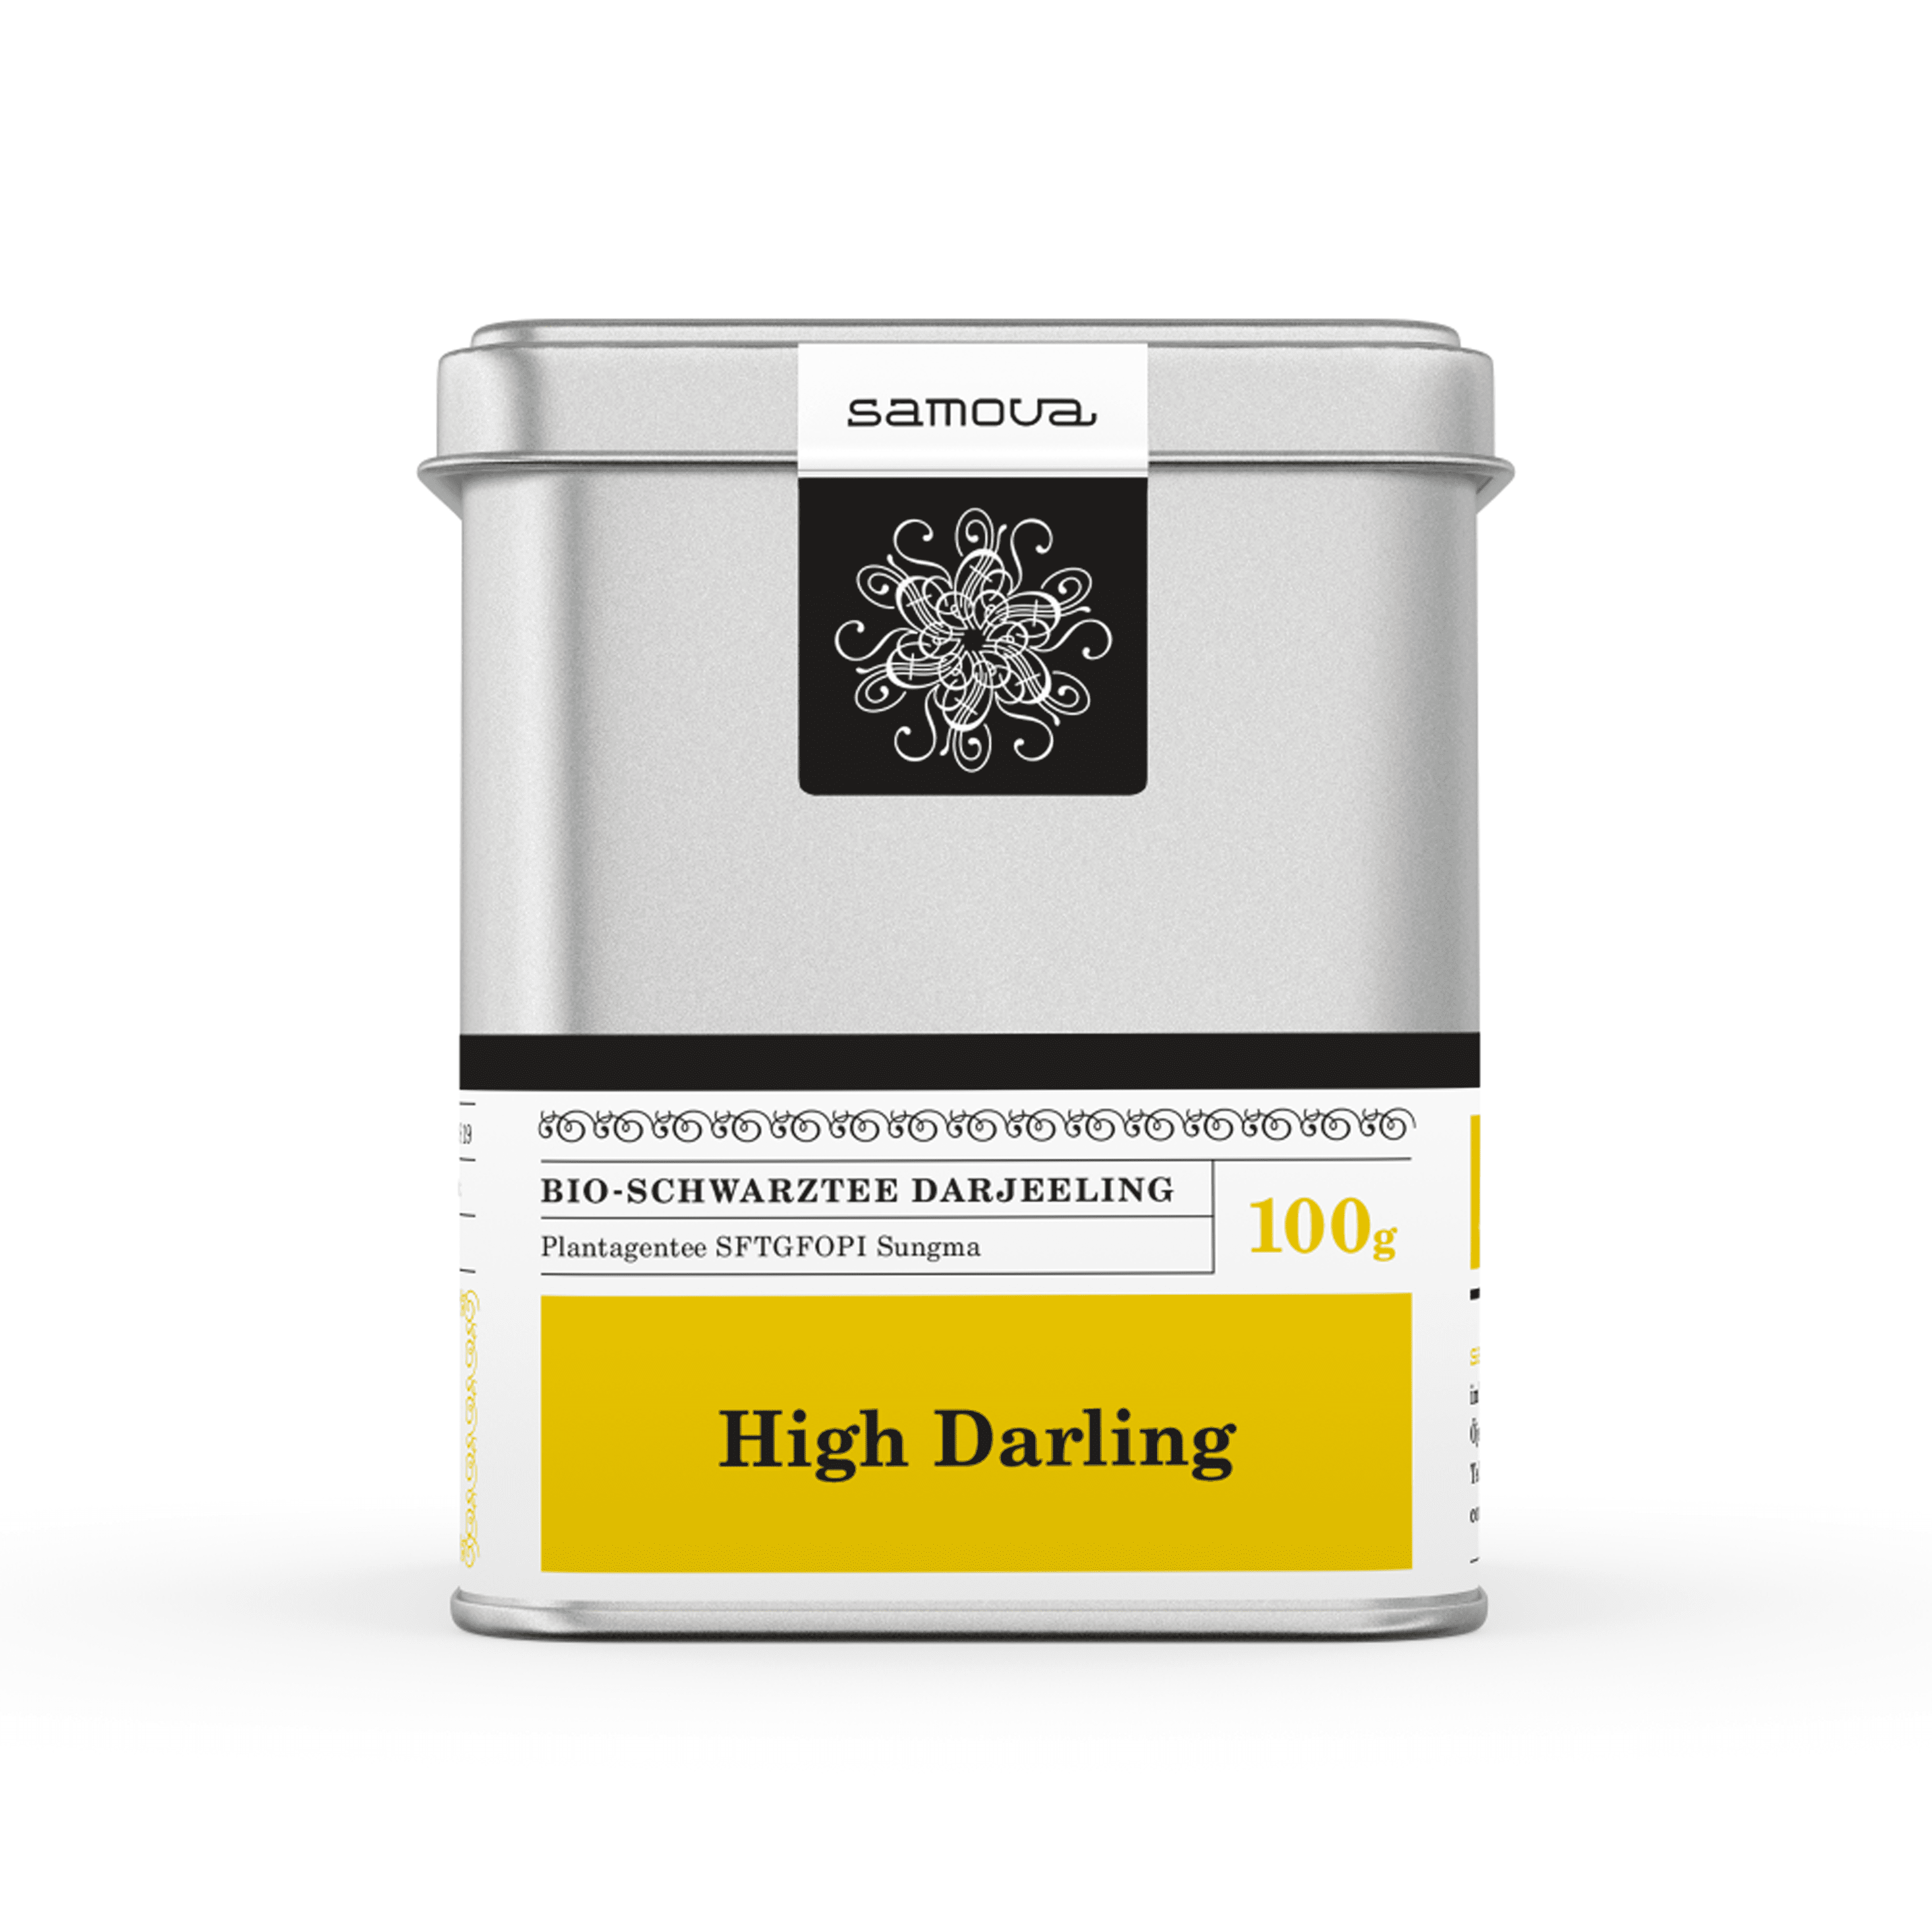 Dåse af High Darling te